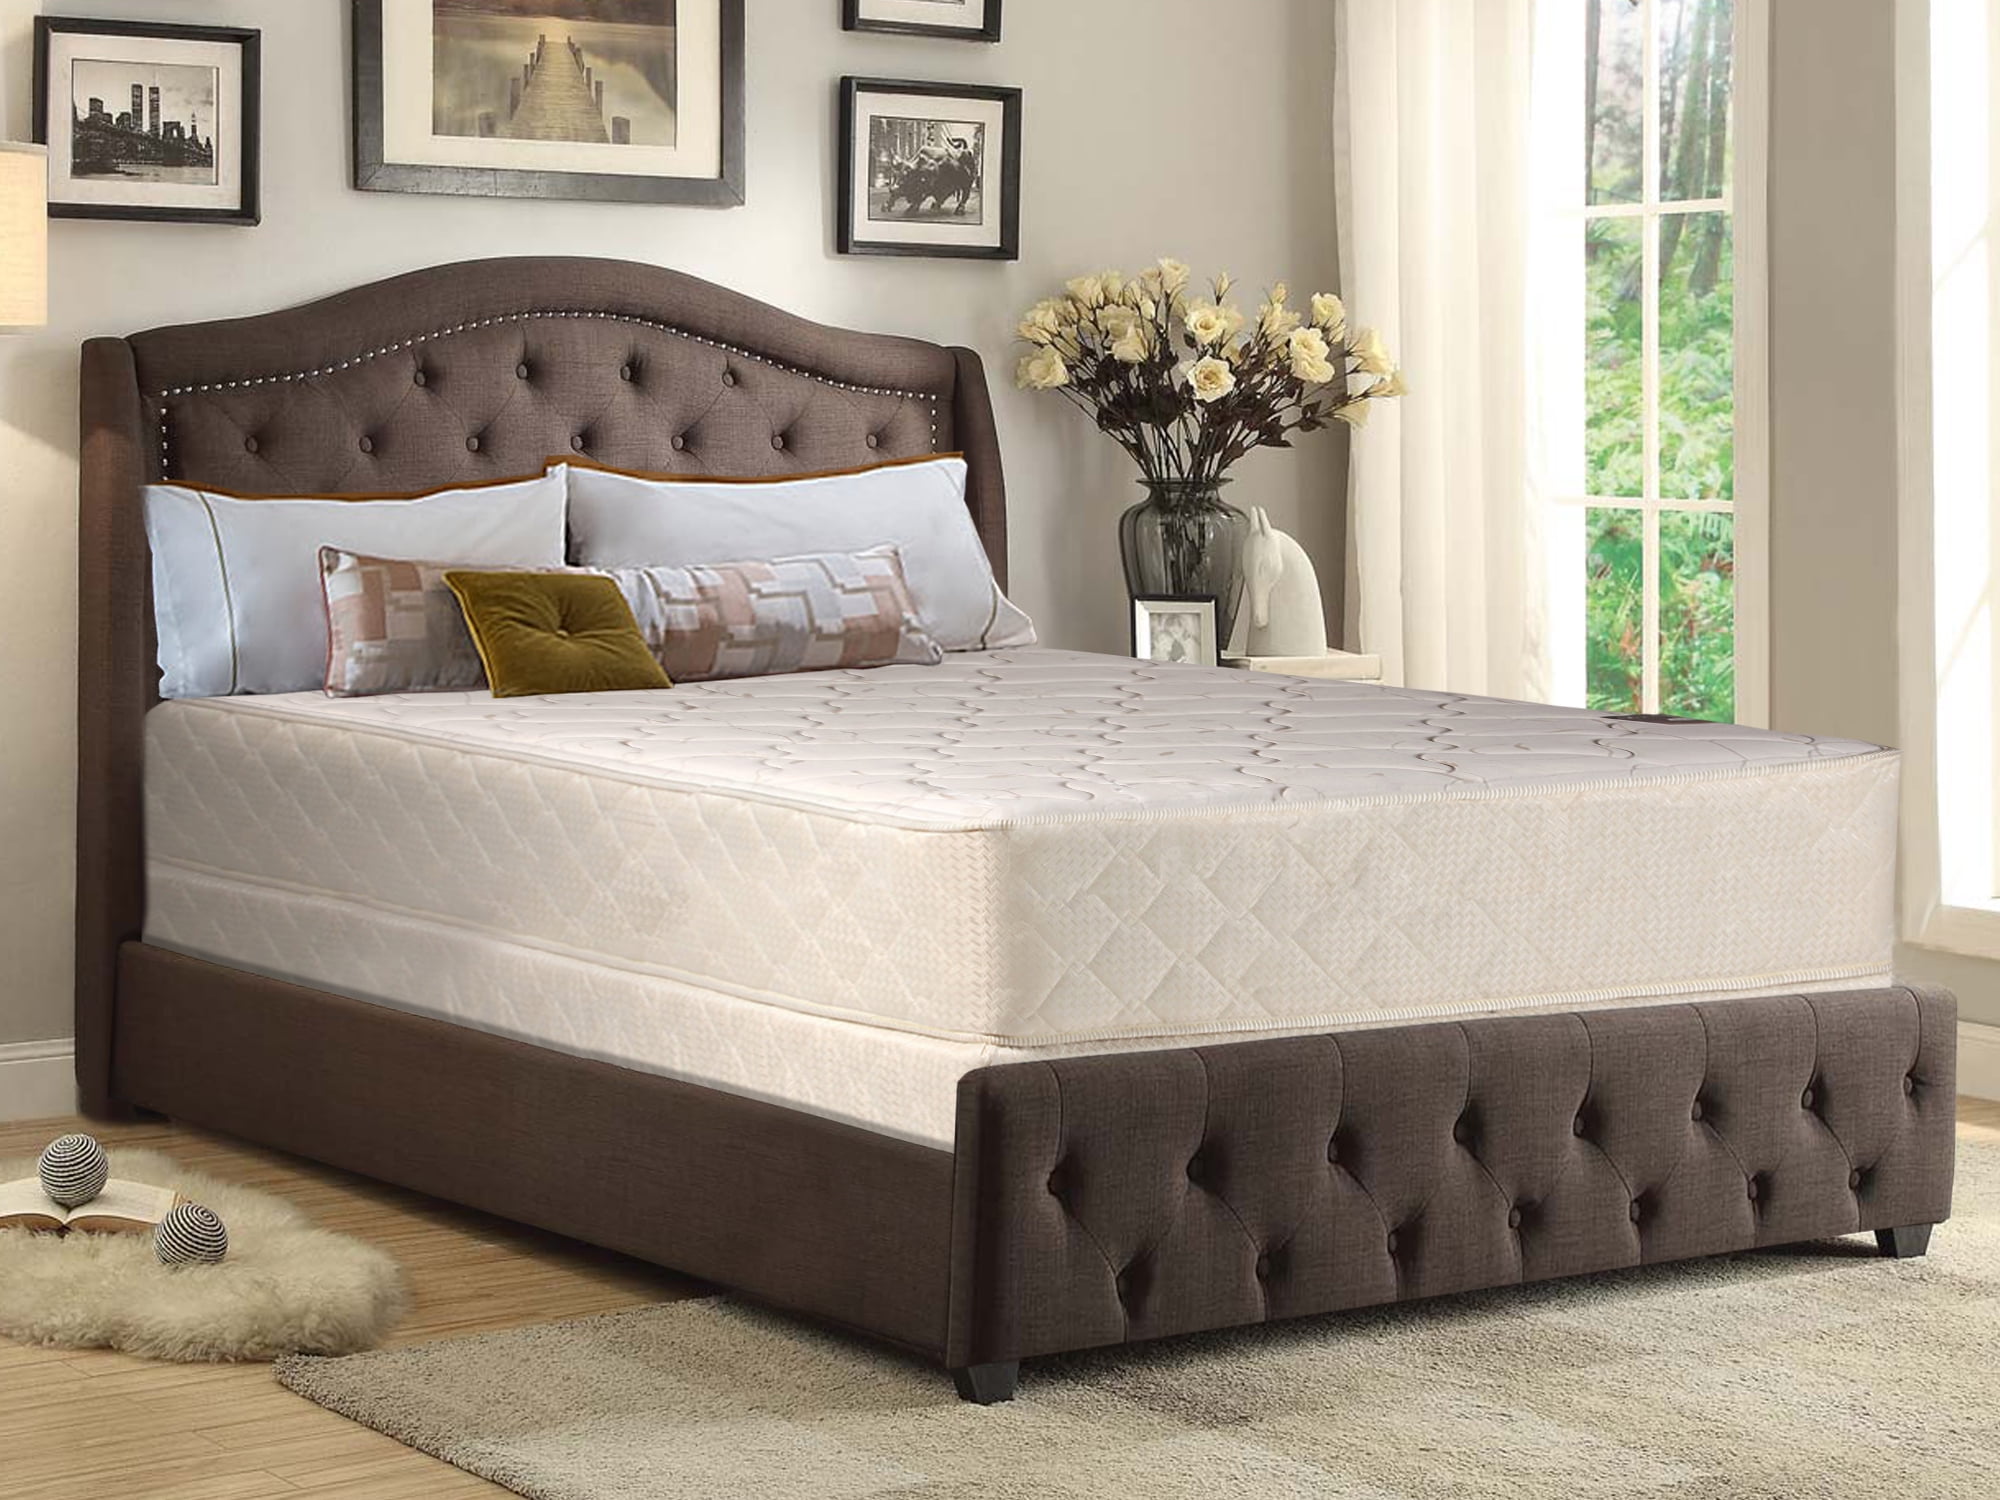 34 inch wide mattress